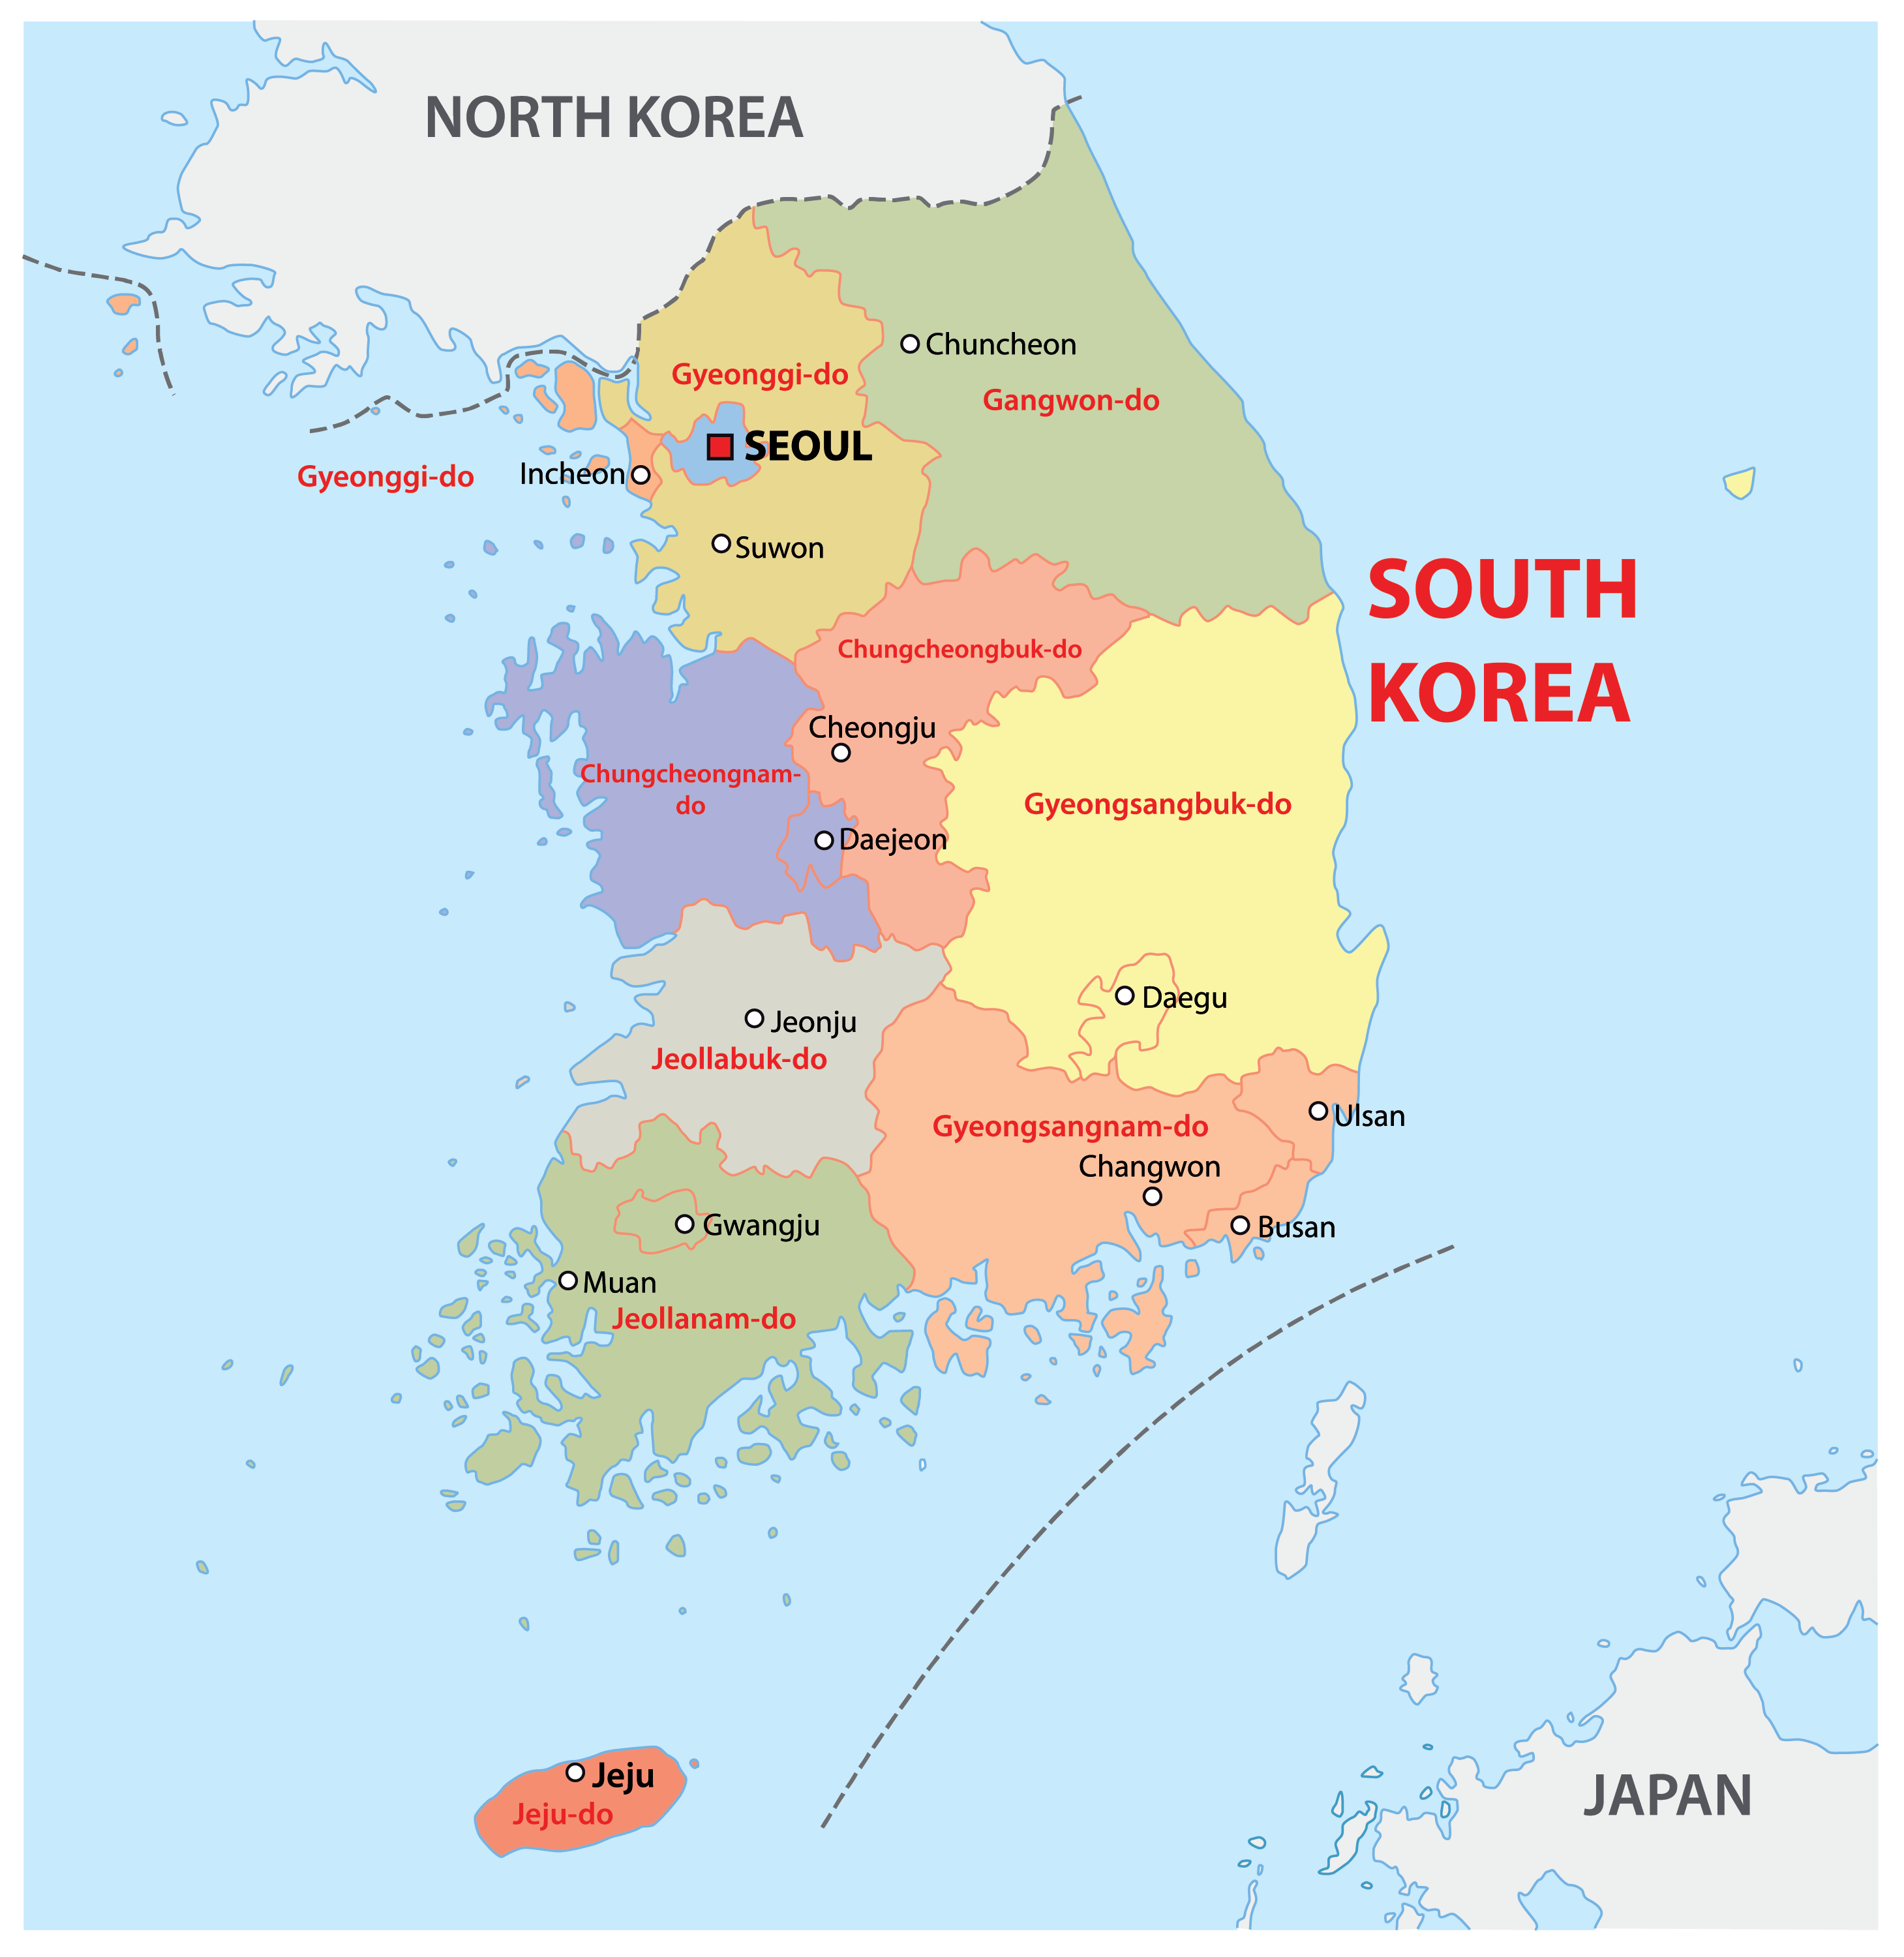 Bản đồ Hàn Quốc 2024: Với bản đồ Hàn Quốc được cập nhật đến năm 2024, người dùng có thể thấy rõ sự phát triển đột phá của đất nước trong các lĩnh vực như công nghệ thông tin, cơ sở hạ tầng, bất động sản... Đây là một công cụ hữu ích để cập nhật thông tin và tìm kiếm những địa điểm mới lạ khi đến thăm đất nước Hàn Quốc.